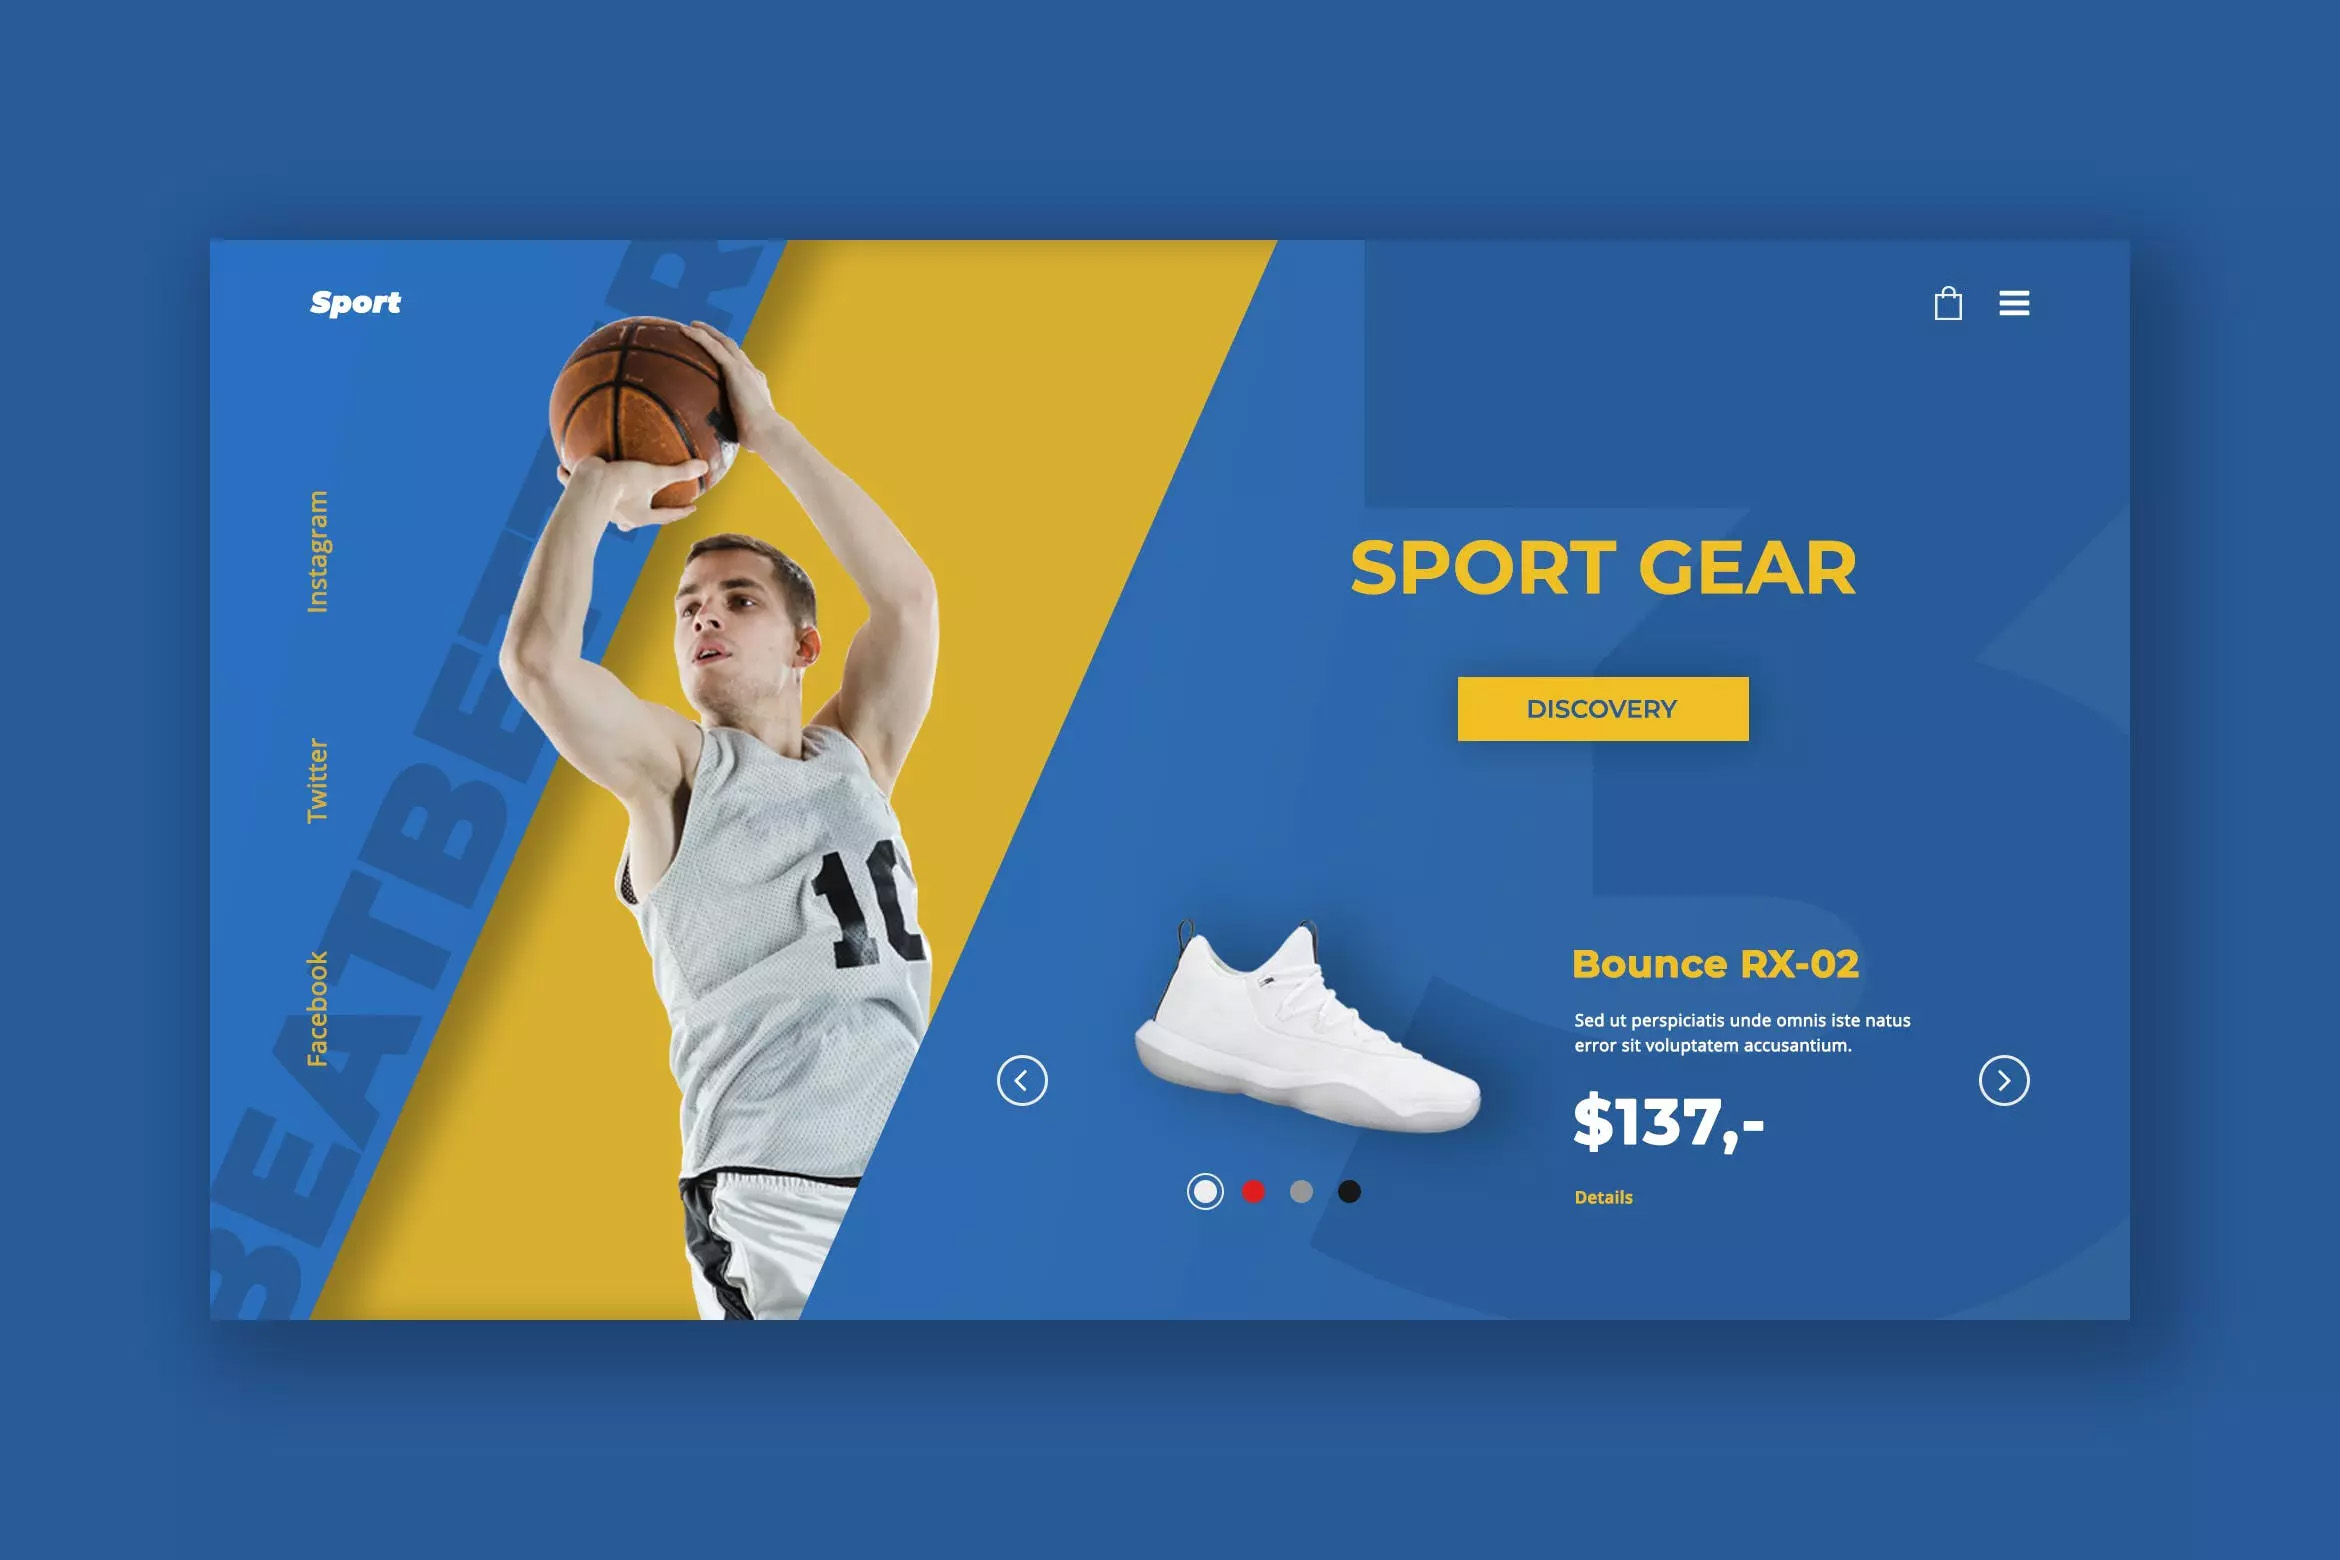 体育品牌官网产品展示界面设计PSD模板 Sport Gear